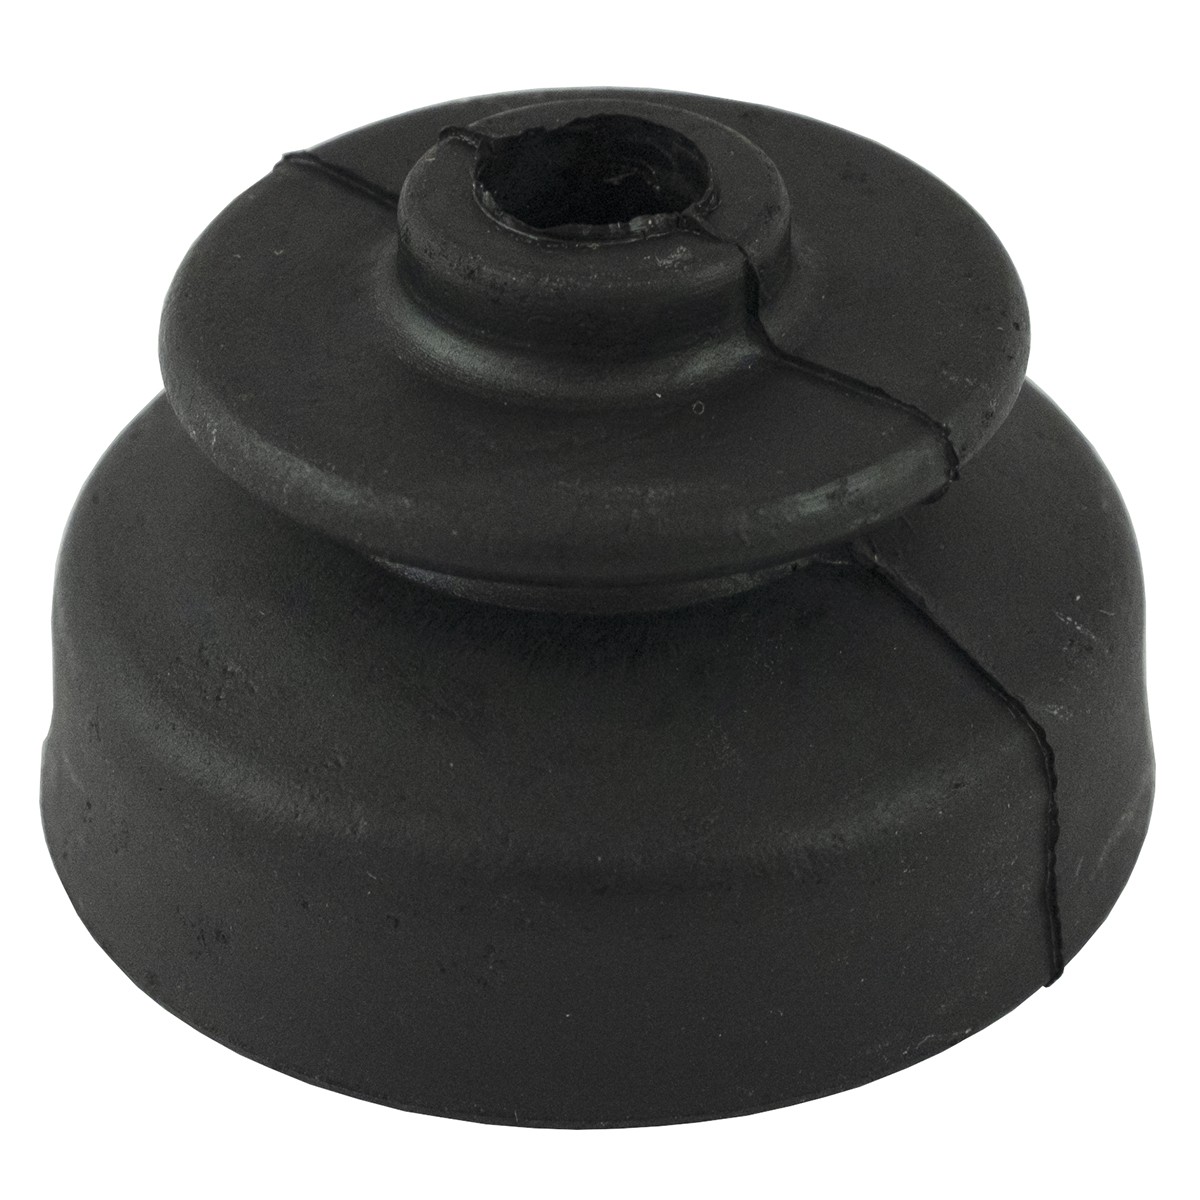 Gummi, Staubkastendichtung 50 x 44 mm, Faltenbalg für Schalthebel Kubota B, 66591-18420